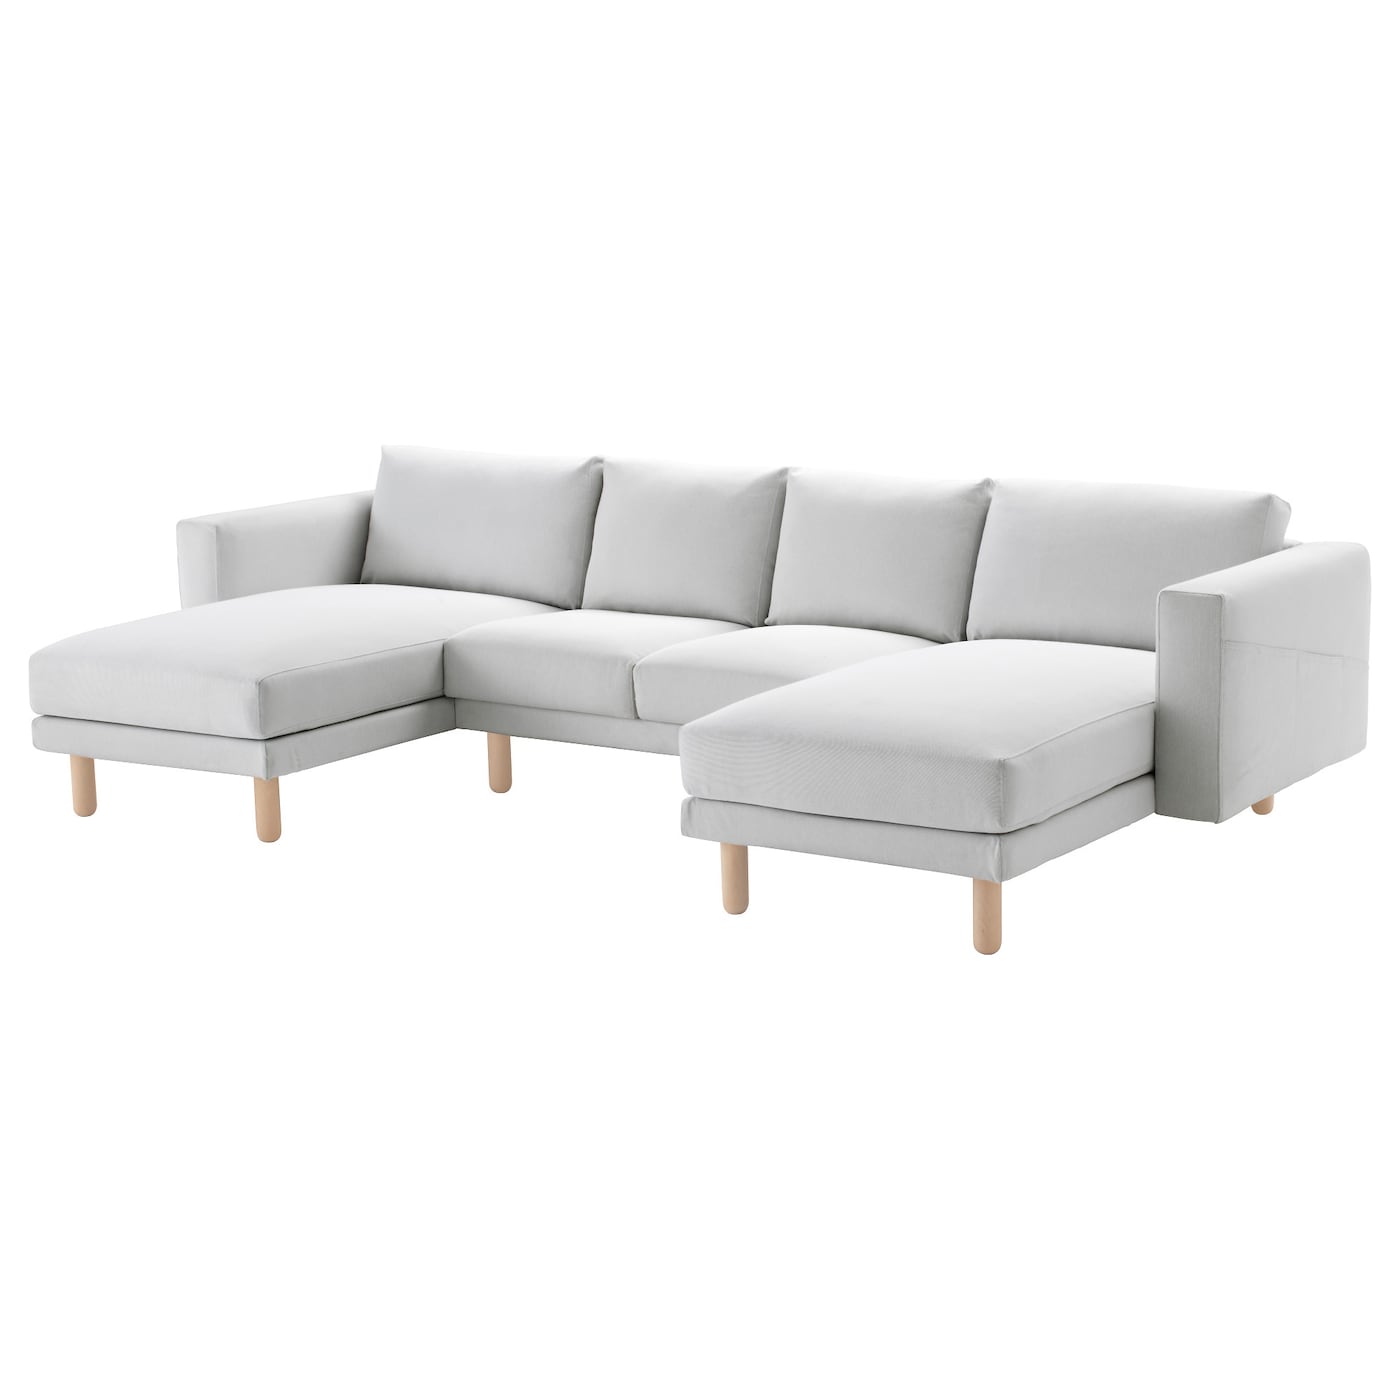 NORSBORG Bezug 4er-Sofa  - extra Bezüge - Möbel Ideen für dein Zuhause von Home Trends. Möbel Trends von Social Media Influencer für dein Skandi Zuhause.